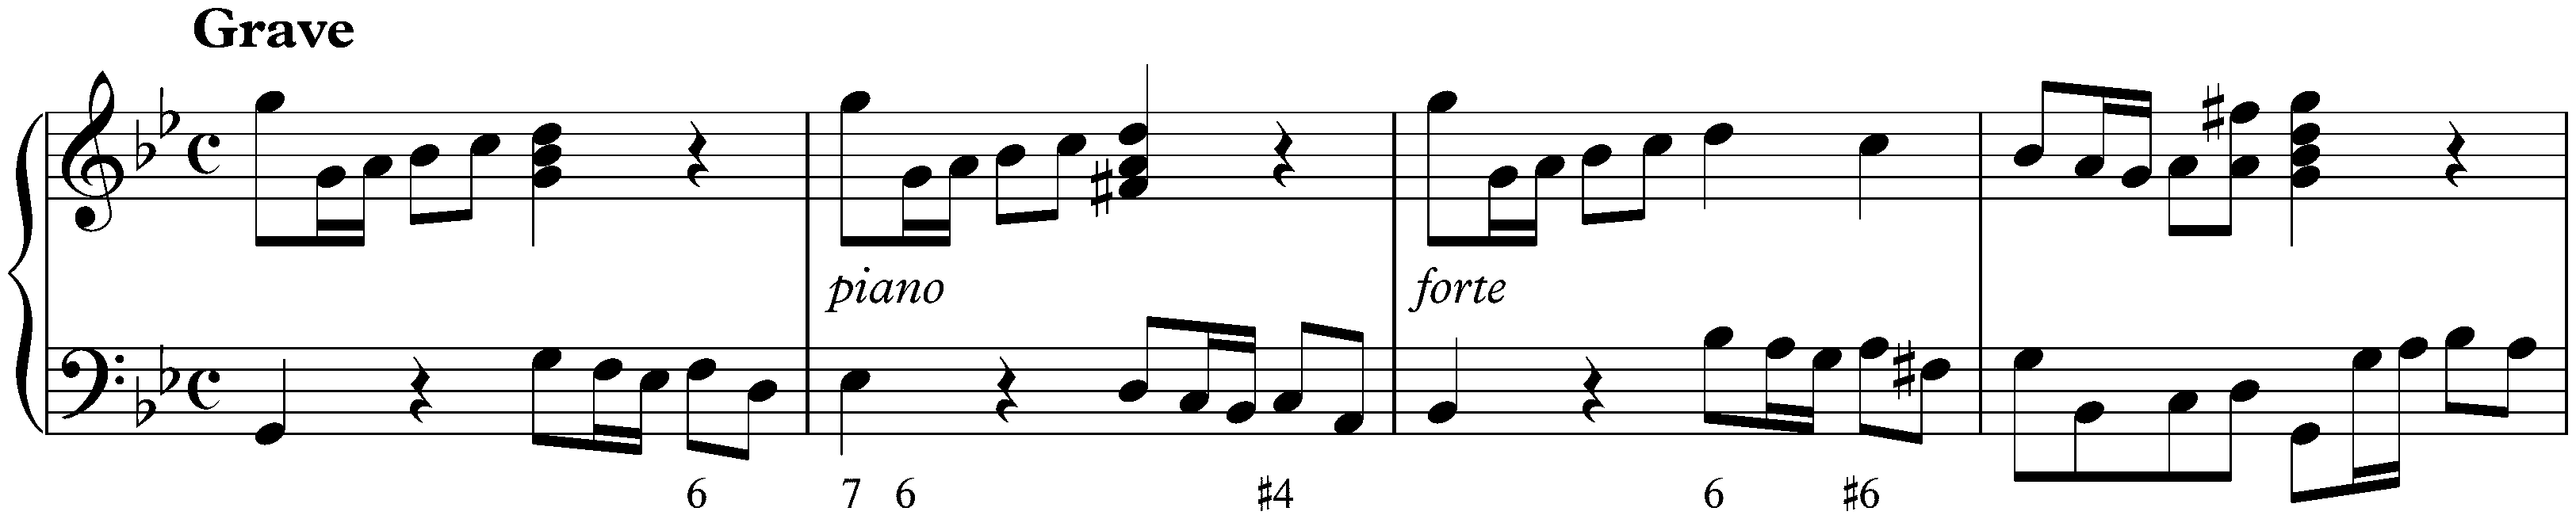 Sonata in G minor, K. 88; 1. Grave